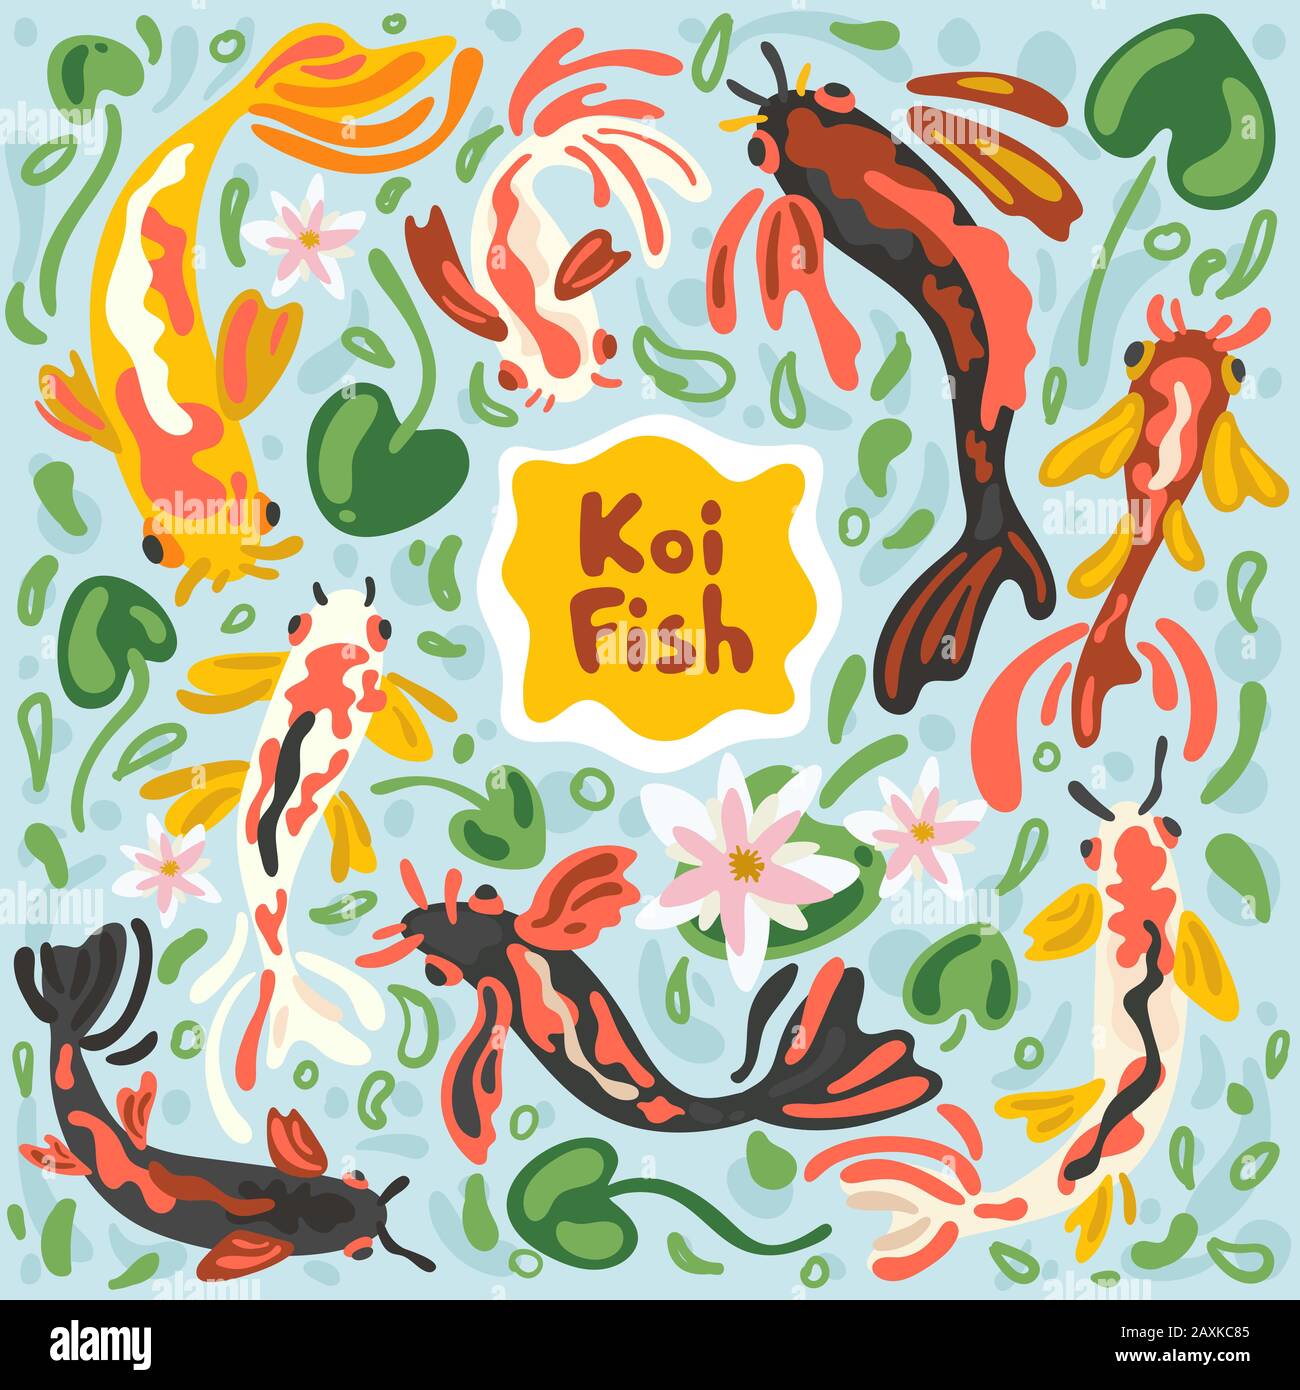 Poissons koi colorés. Illustration de stock vectoriel koi carp abstrait. Japonais, chinois nageant des carpes dans l'étang avec feuille de lotus, fleurs et algues. Moderne Illustration de Vecteur